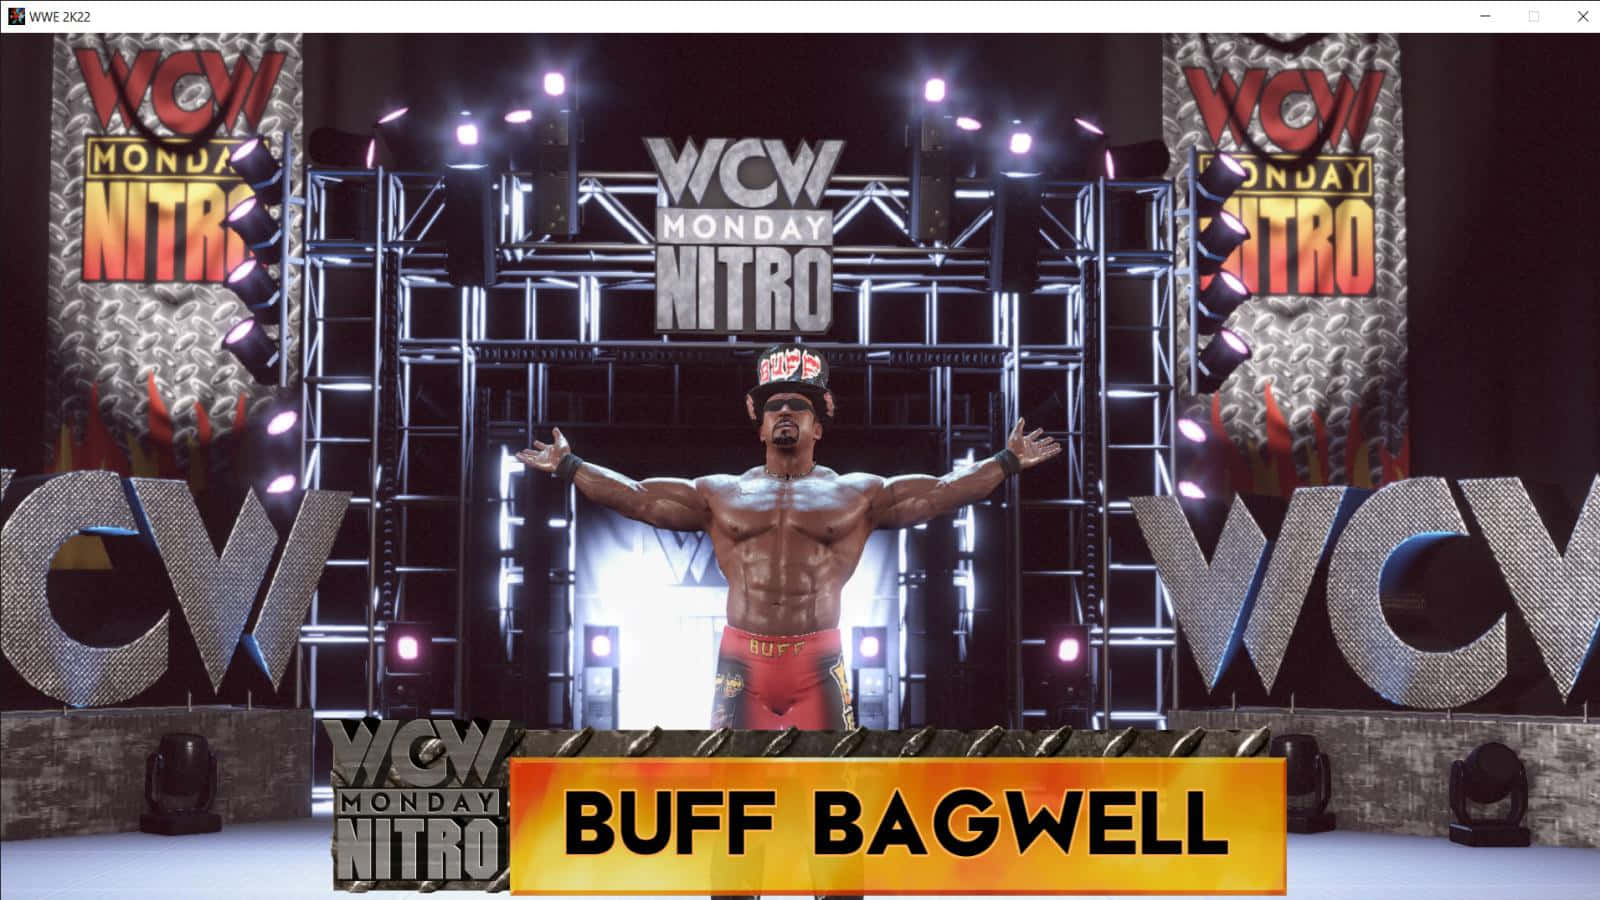 Buff Bagwell WCW Mandag Nitro Wrestler Fotografering Tapet Wallpaper